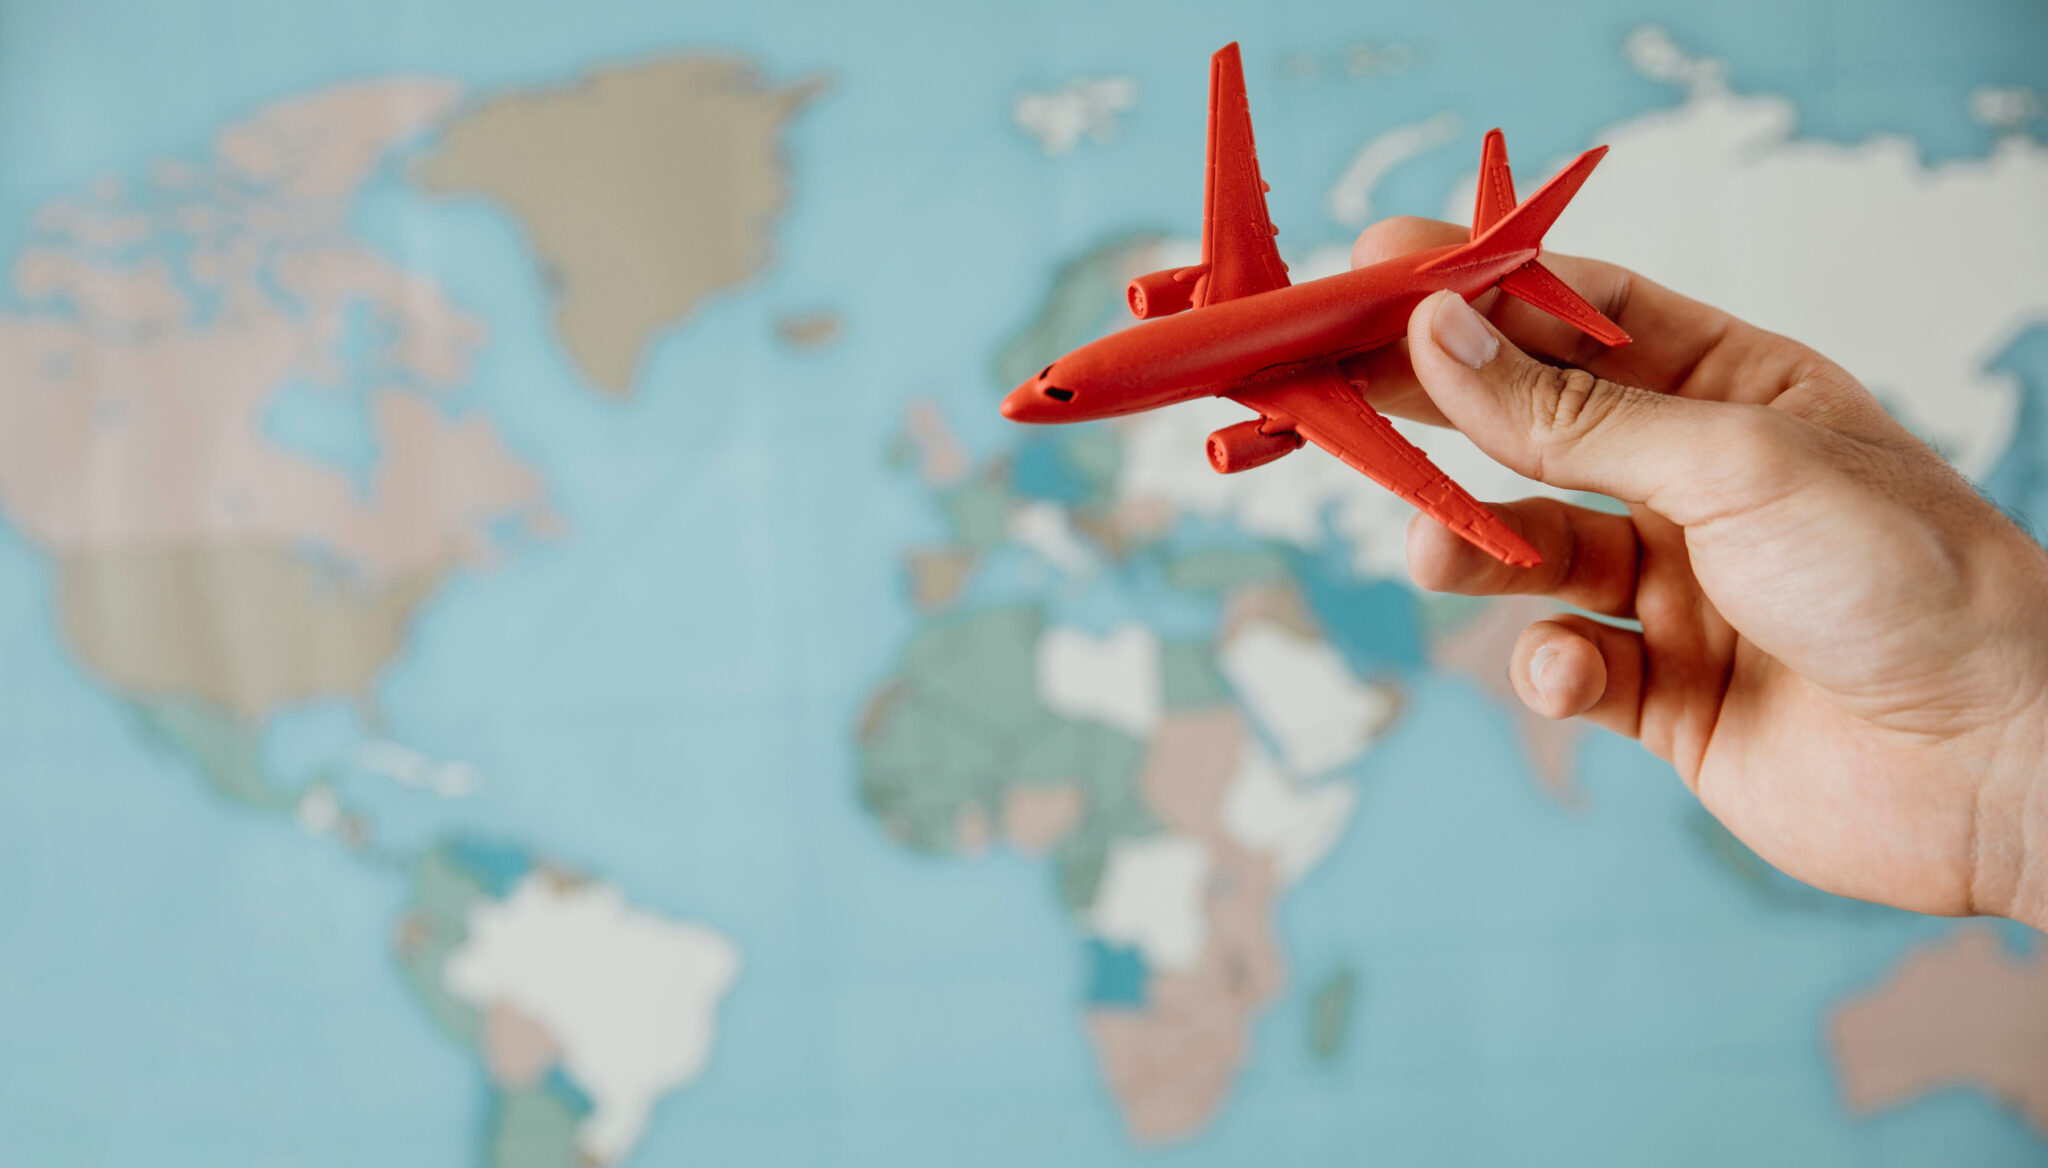 Seguro de Viajes Digital - Una mano sosteniendo un avión de juguete